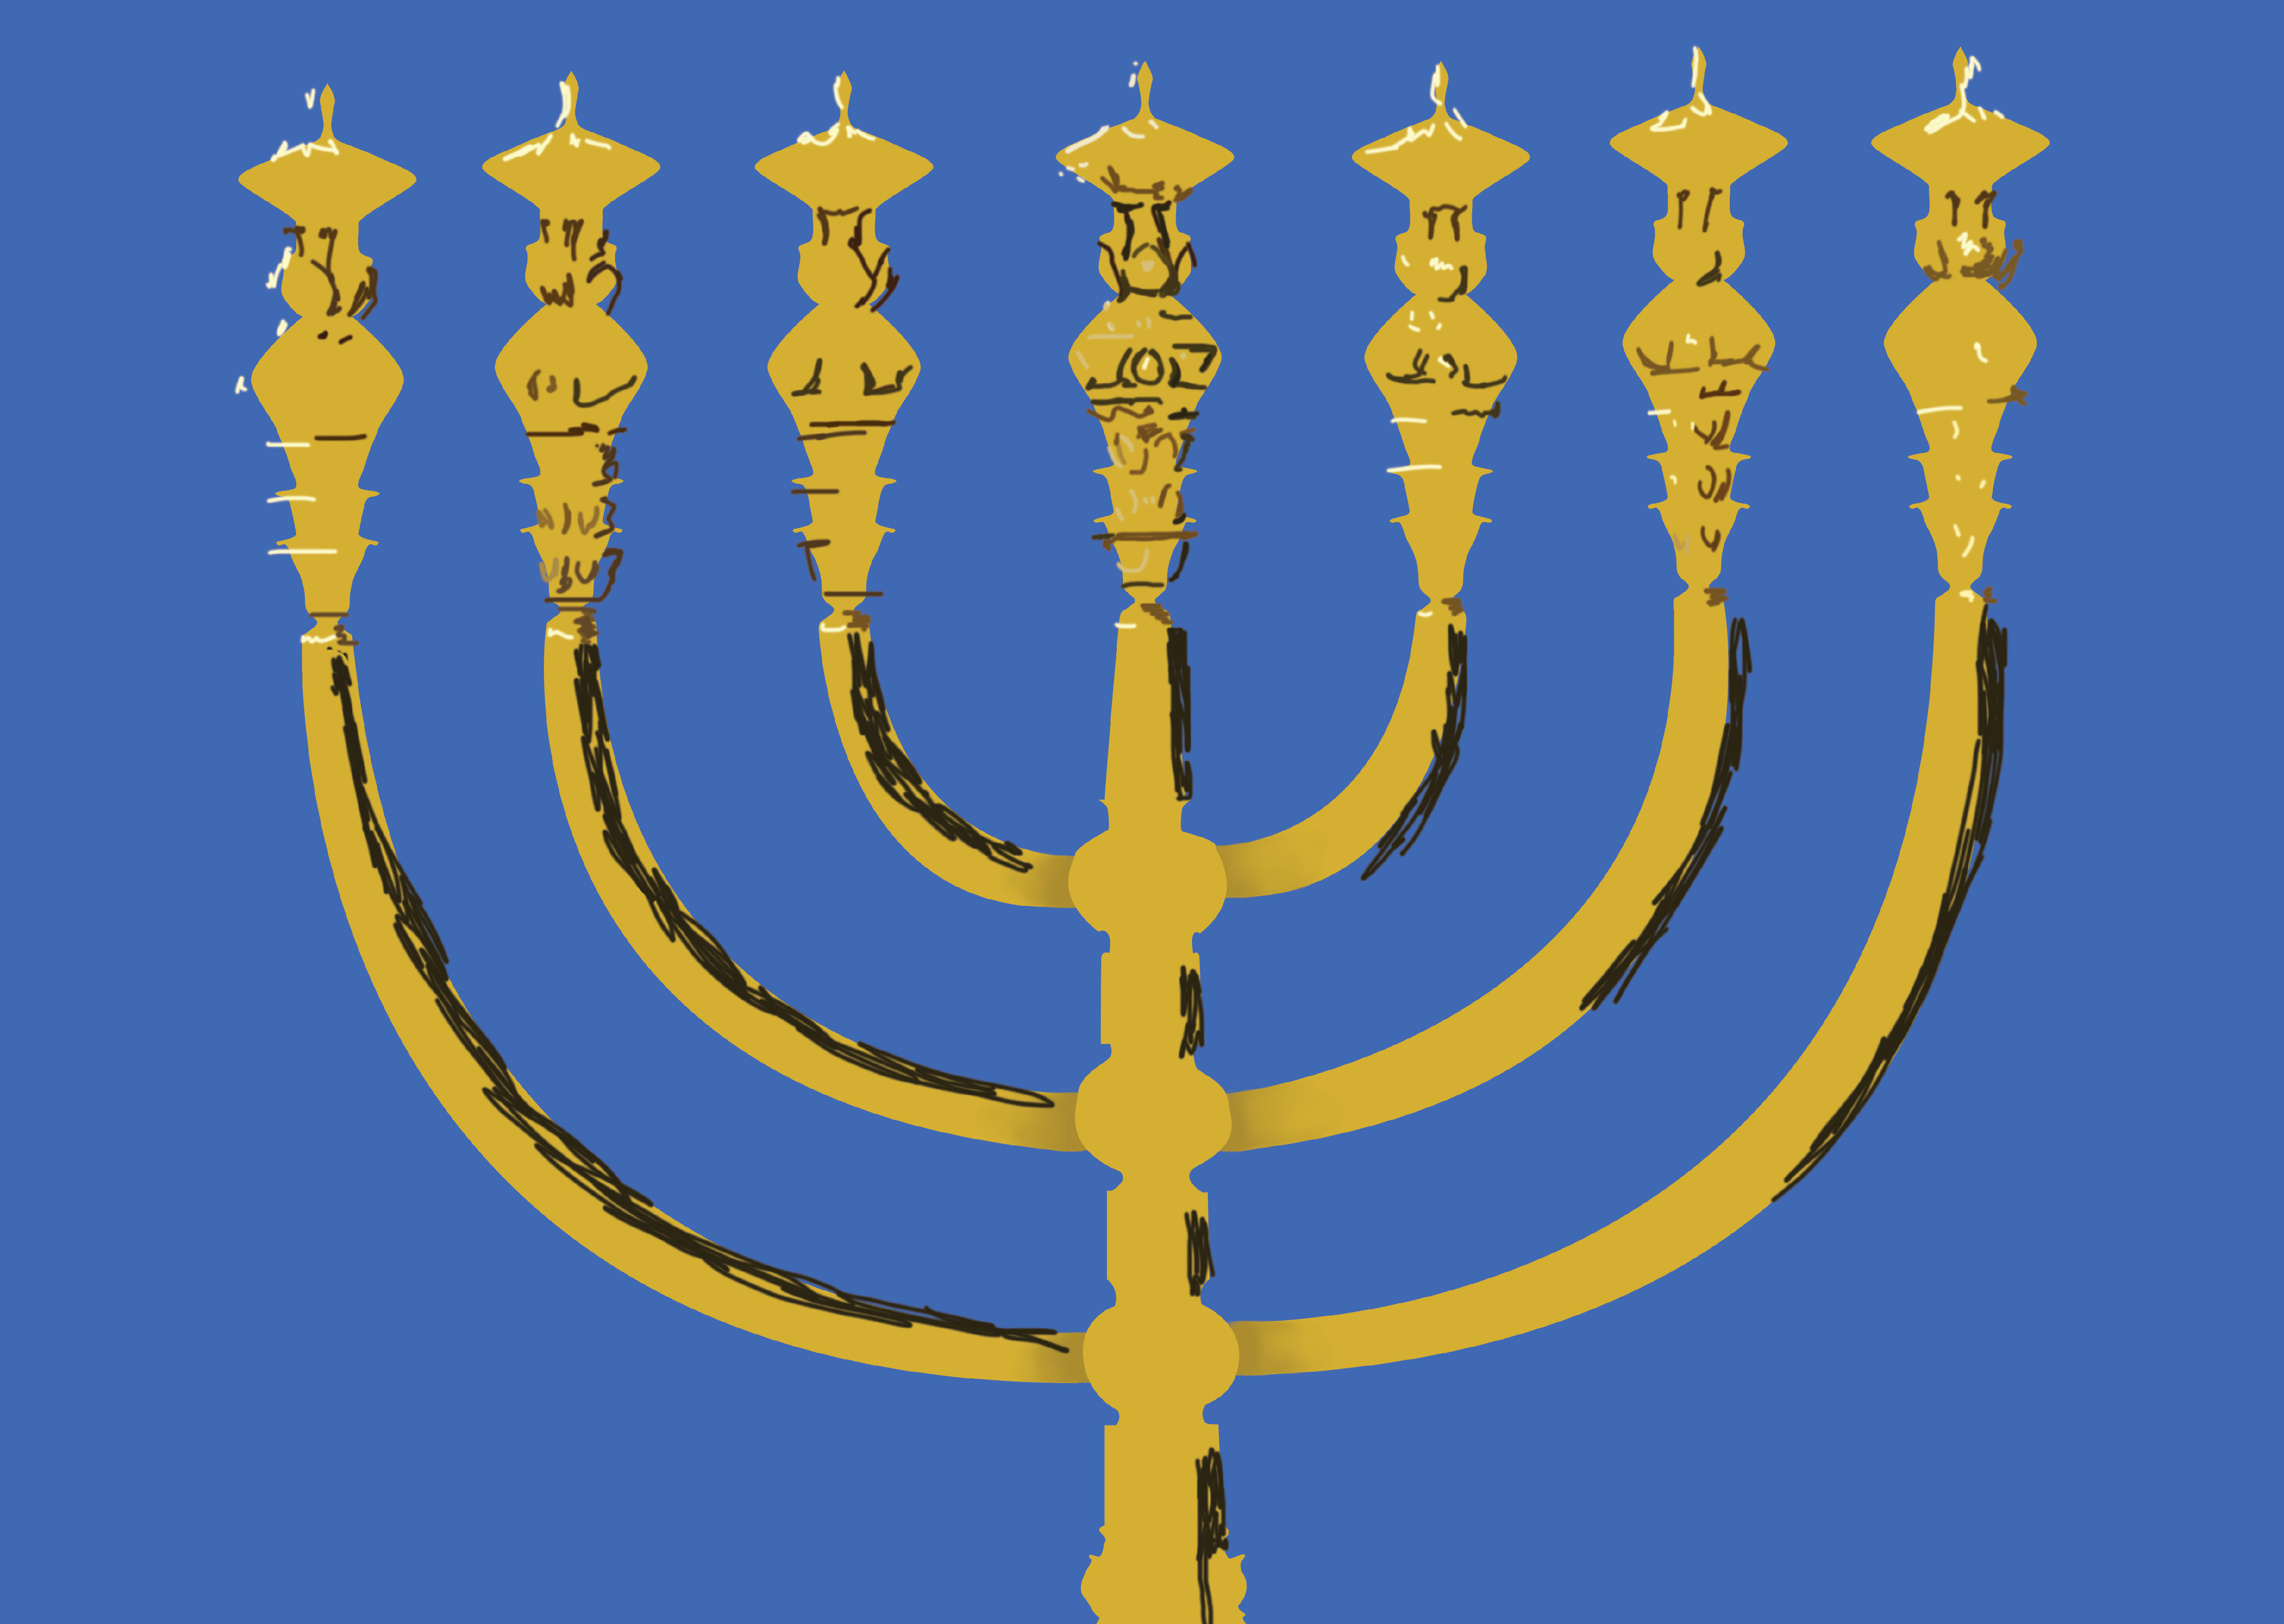 Judaism